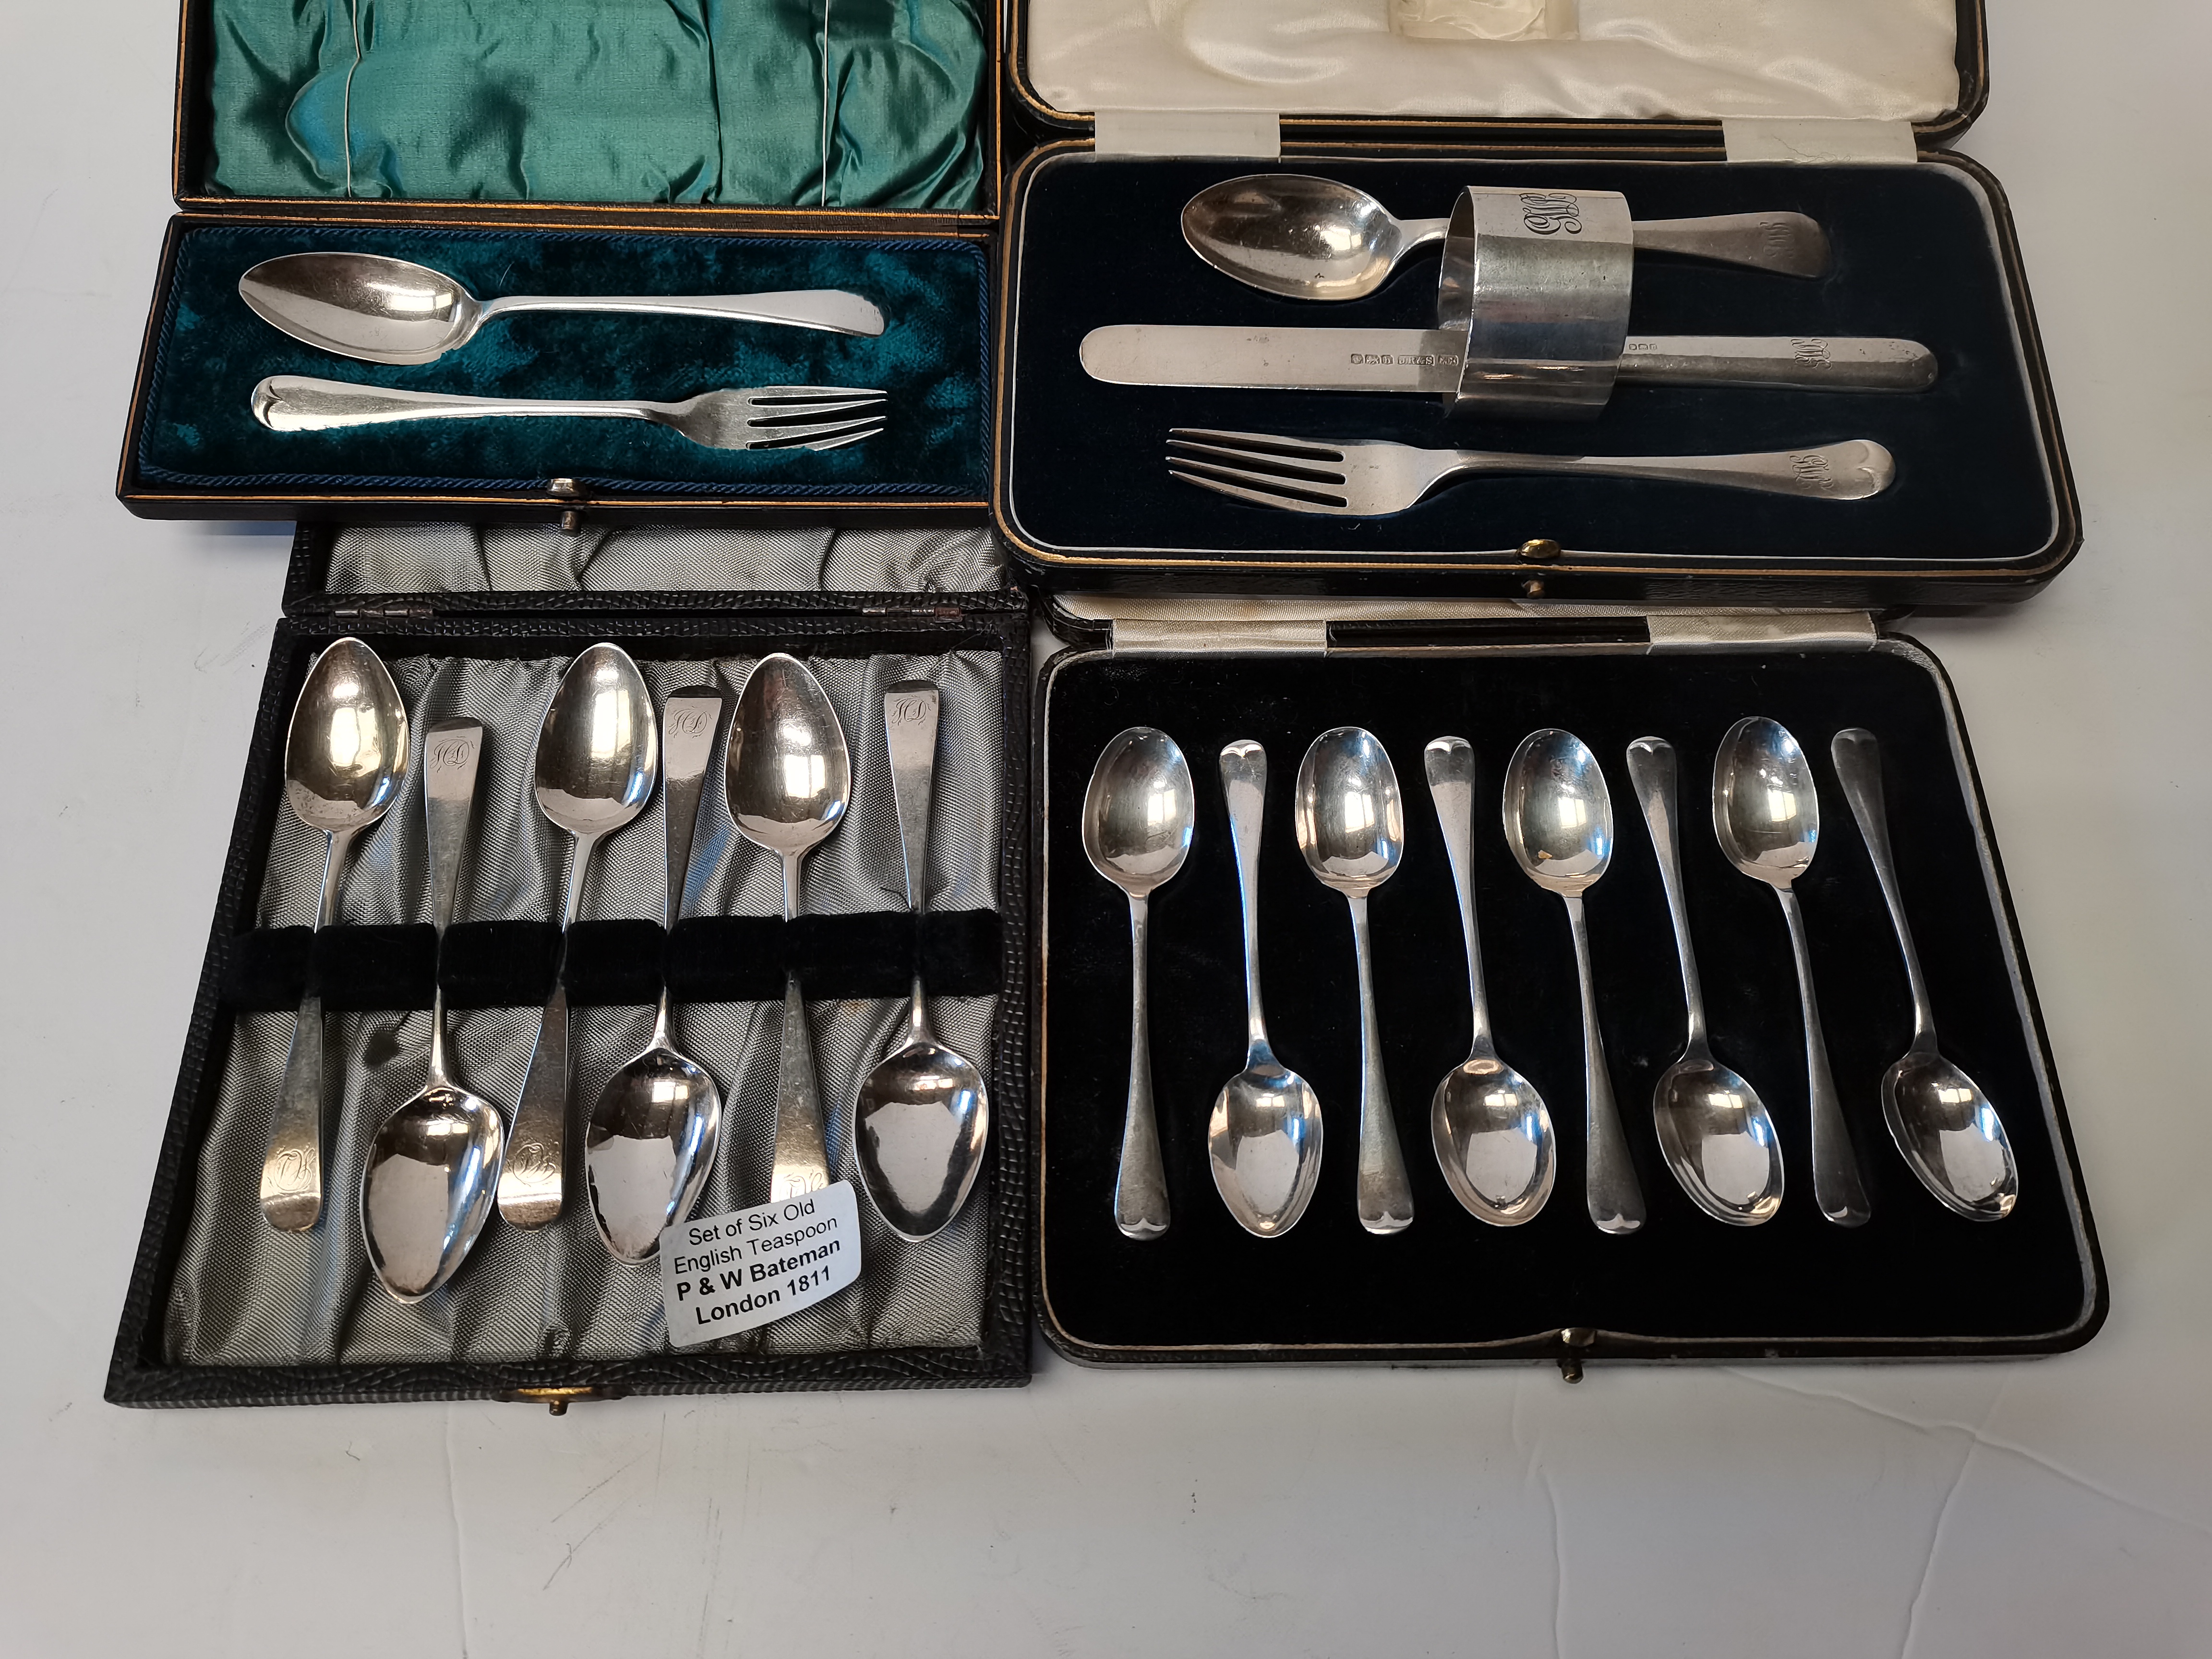 Silver cutlery etc.